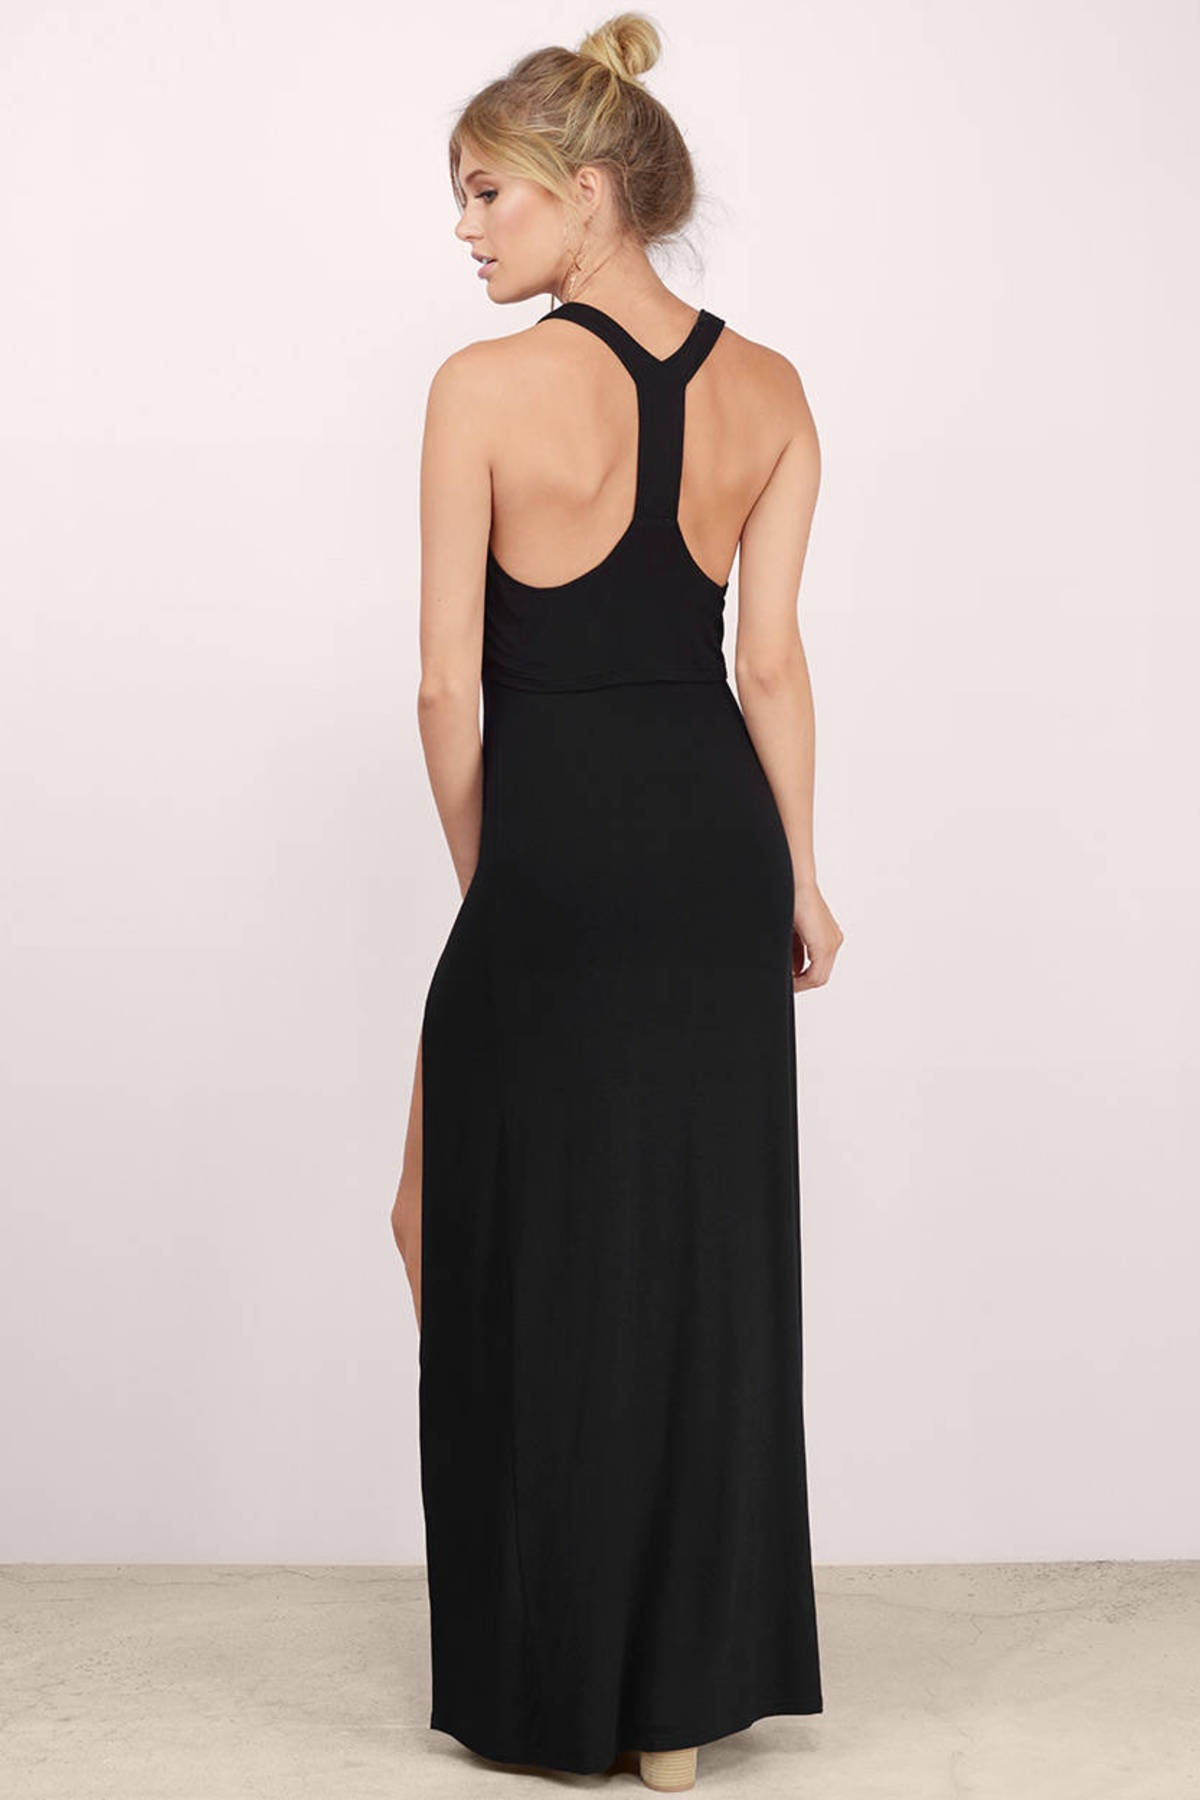 Sexy Black Maxi Dress - Front Slits Dress - Maxi Dress